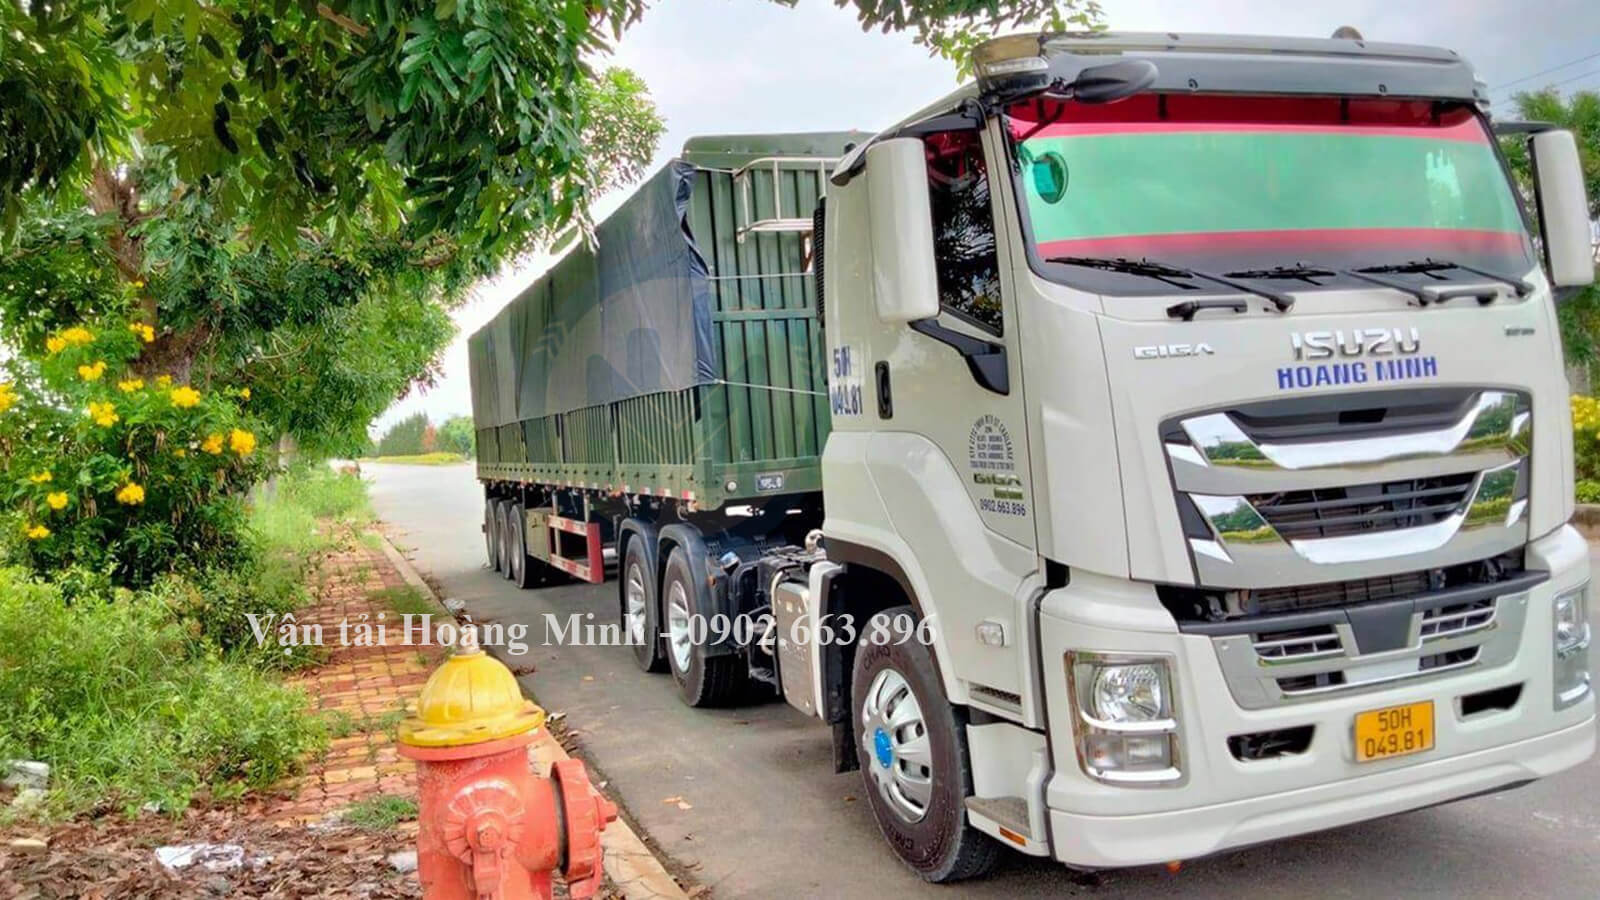 Dịch vụ cho thuê xe tải chở hàng Quận Tân Bình giá rẻ.jpg